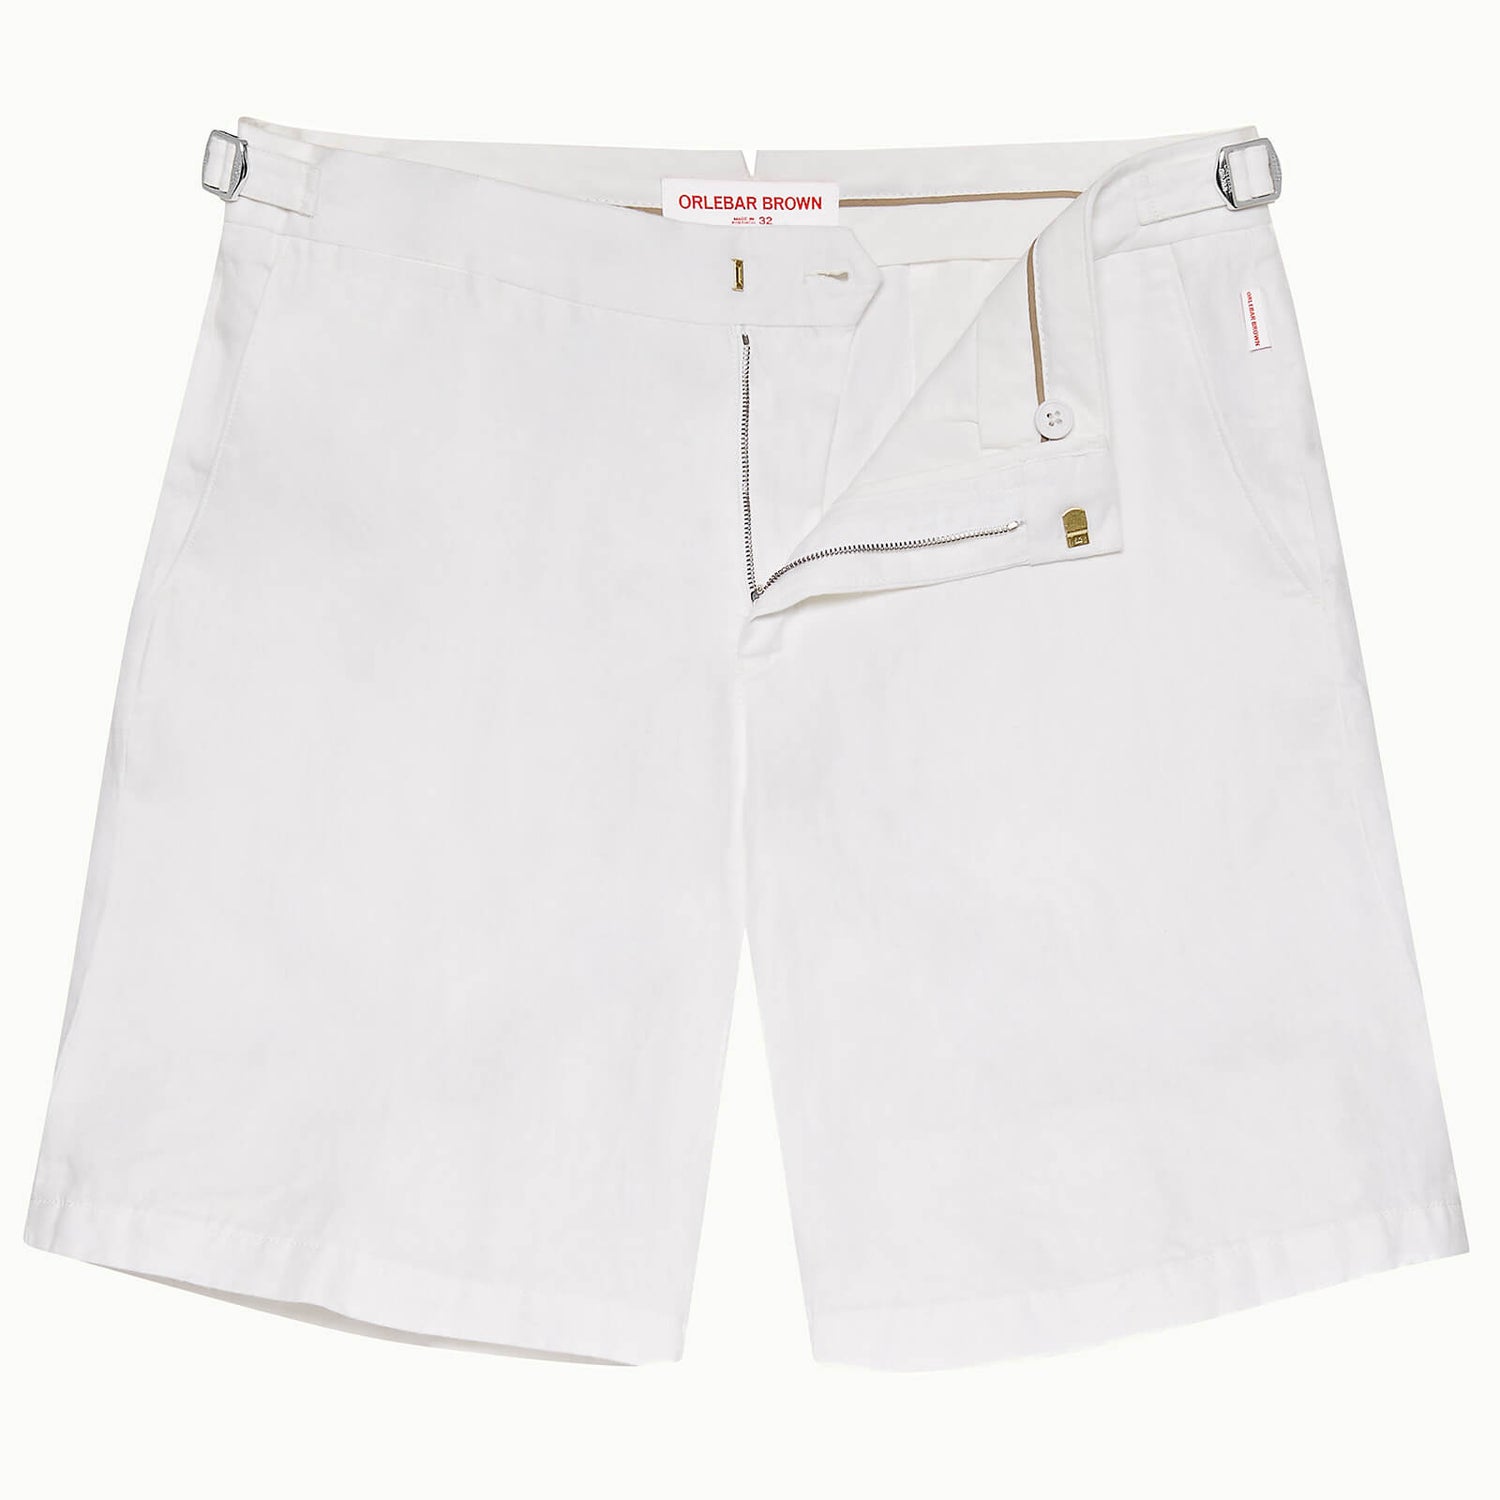 Norwich Linen 系列定制款亚麻棉短裤-白色